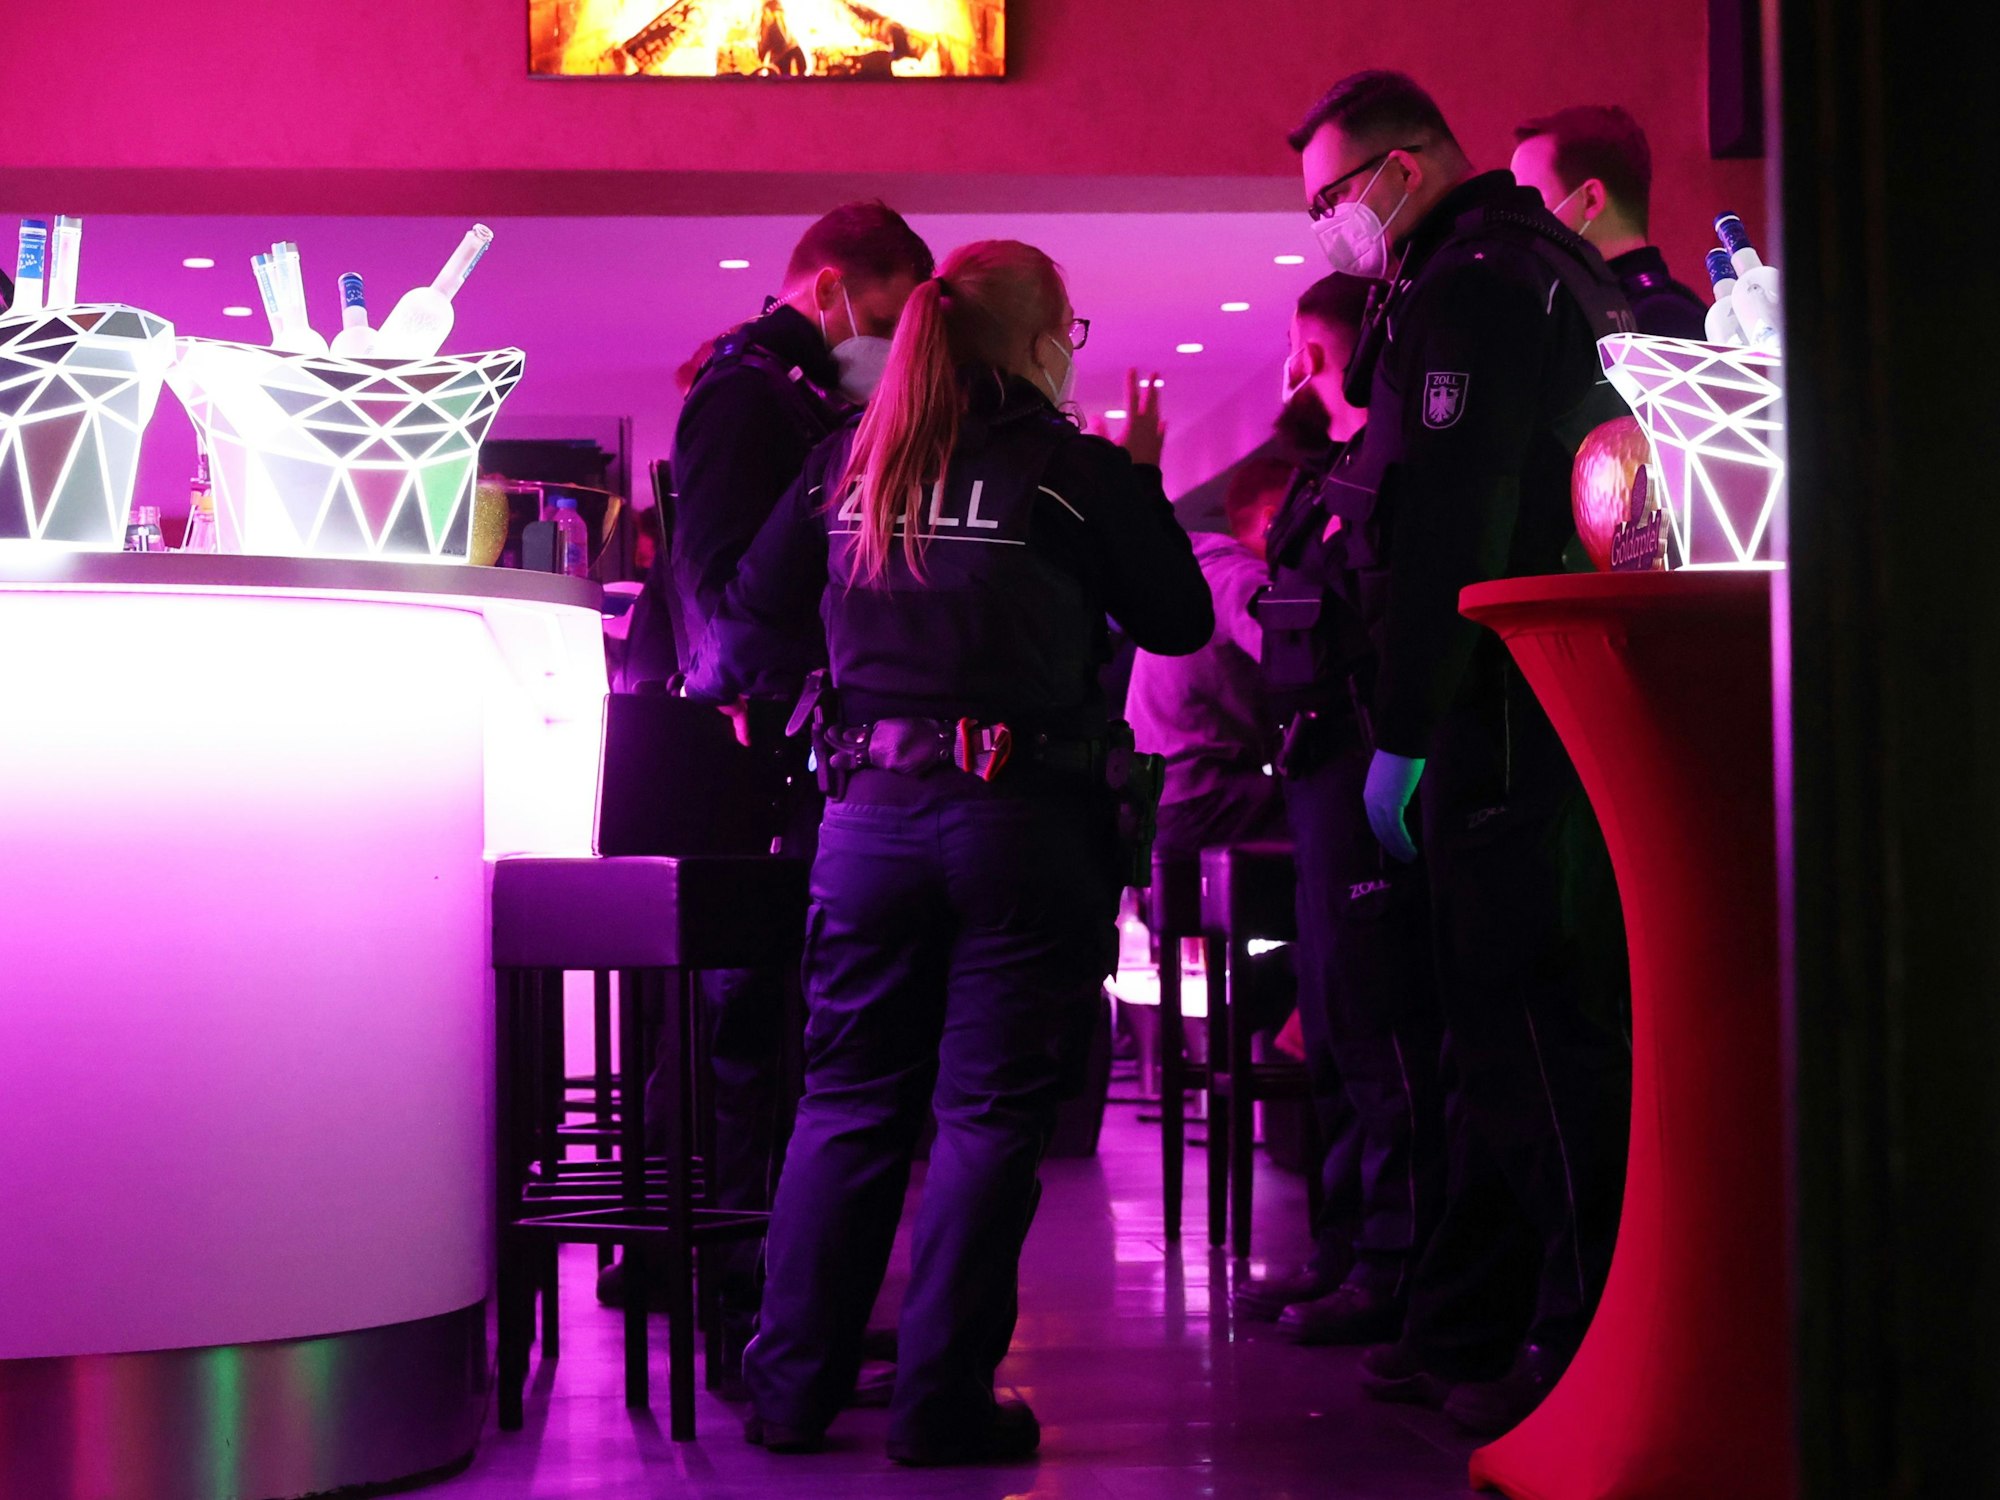 Abendliche Razzia von Zoll und Ordnungsamt, sie kontrollieren Shisha-Bars in der Innenstadt
Goldapfel auf der Zülpicher Str.